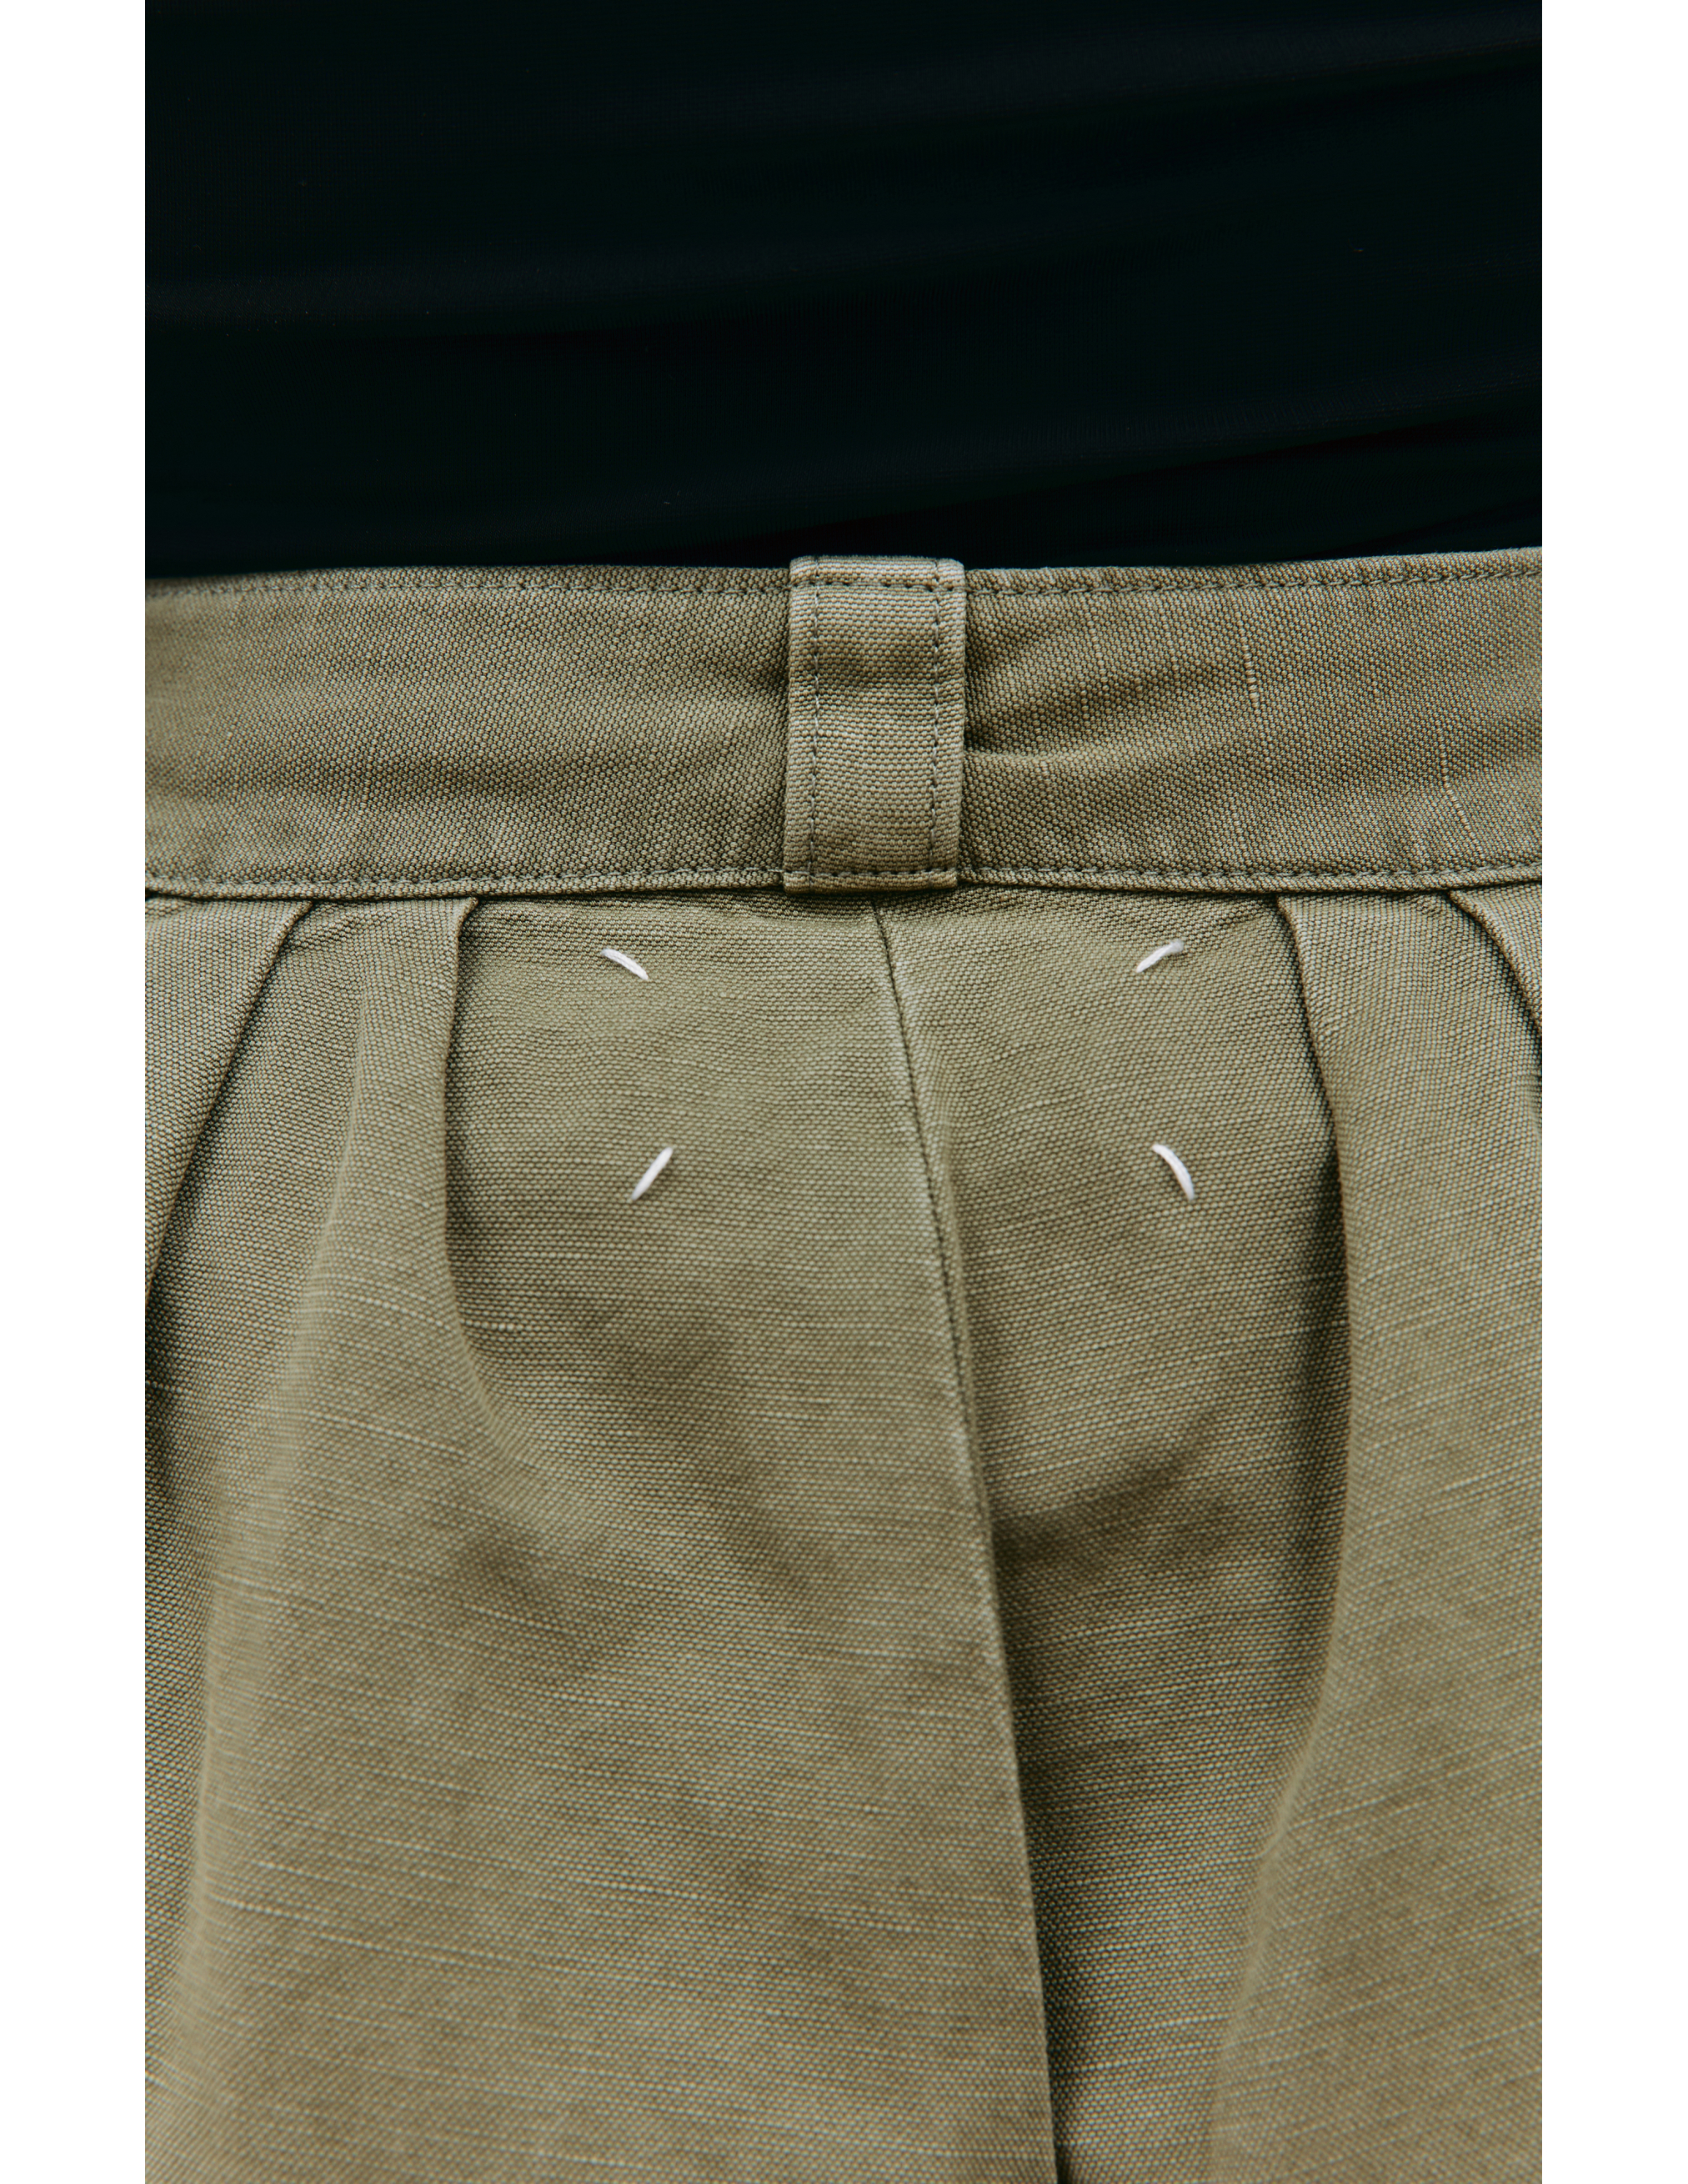 Широкие брюки с защипами Maison Margiela S50KA0628/S54760/702, размер 36;38;40;50 S50KA0628/S54760/702 - фото 4